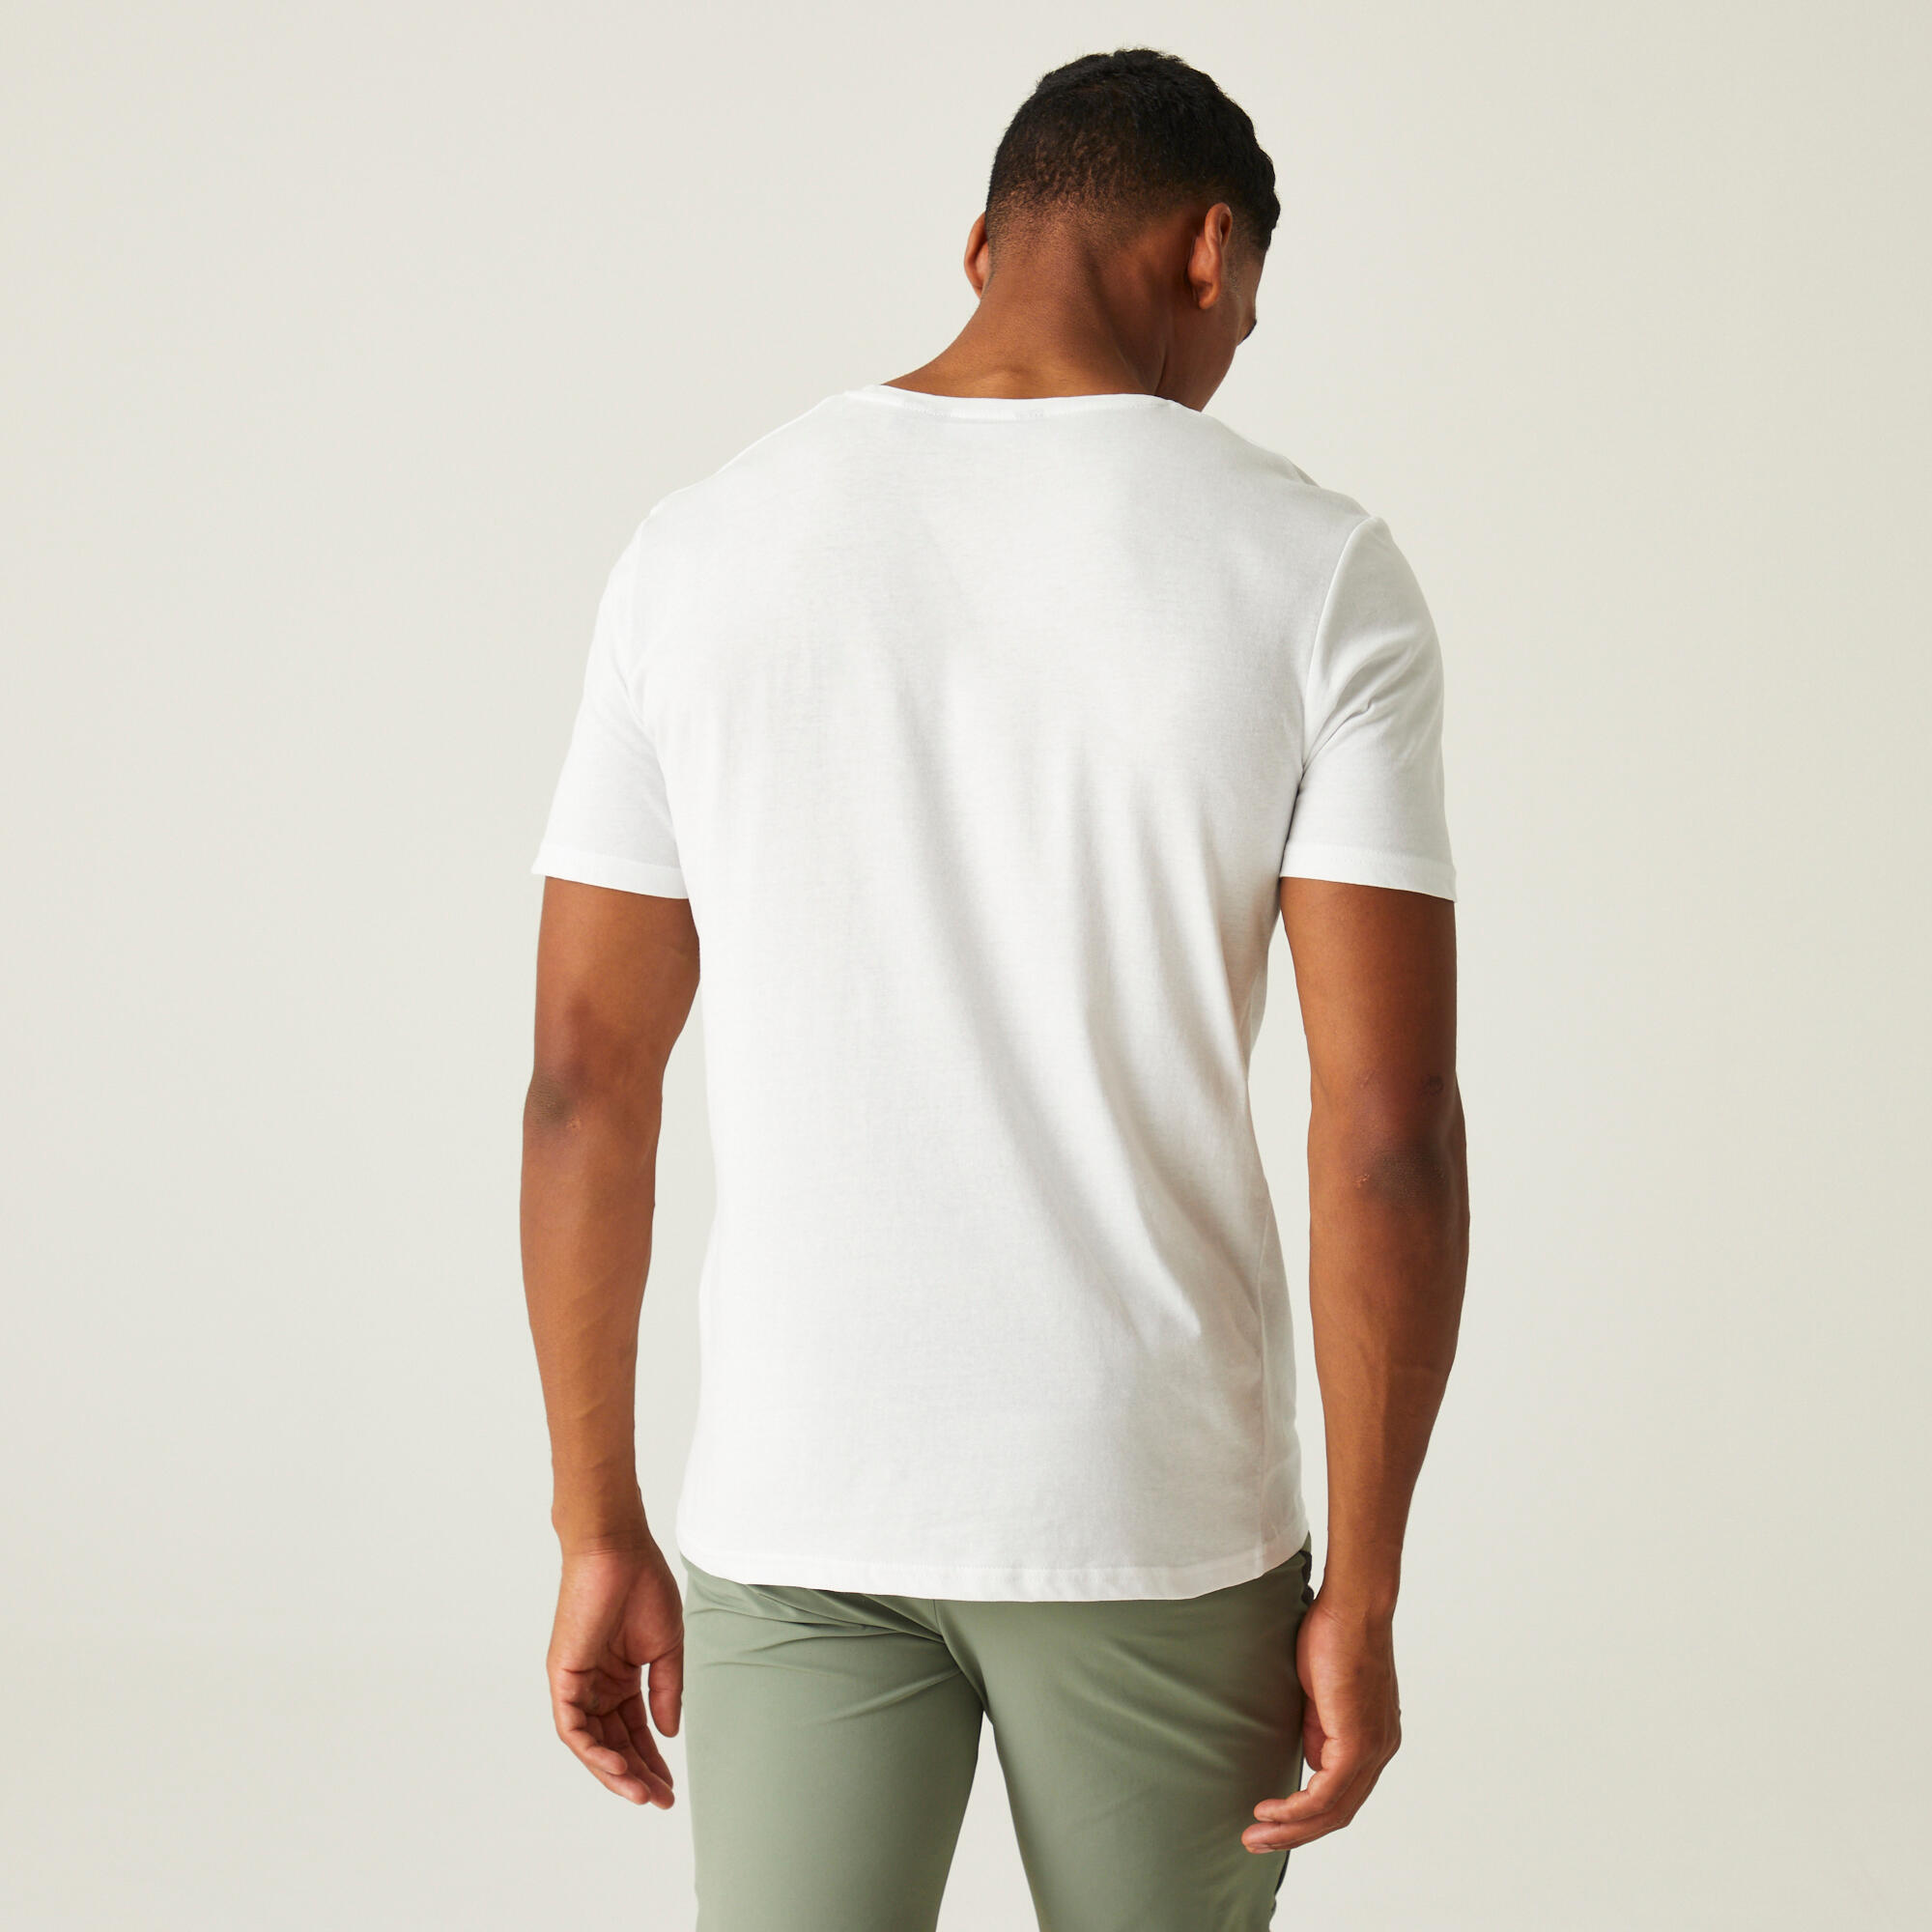 Tait Men's Walking Short Sleeve T-Shirt - White 2/5